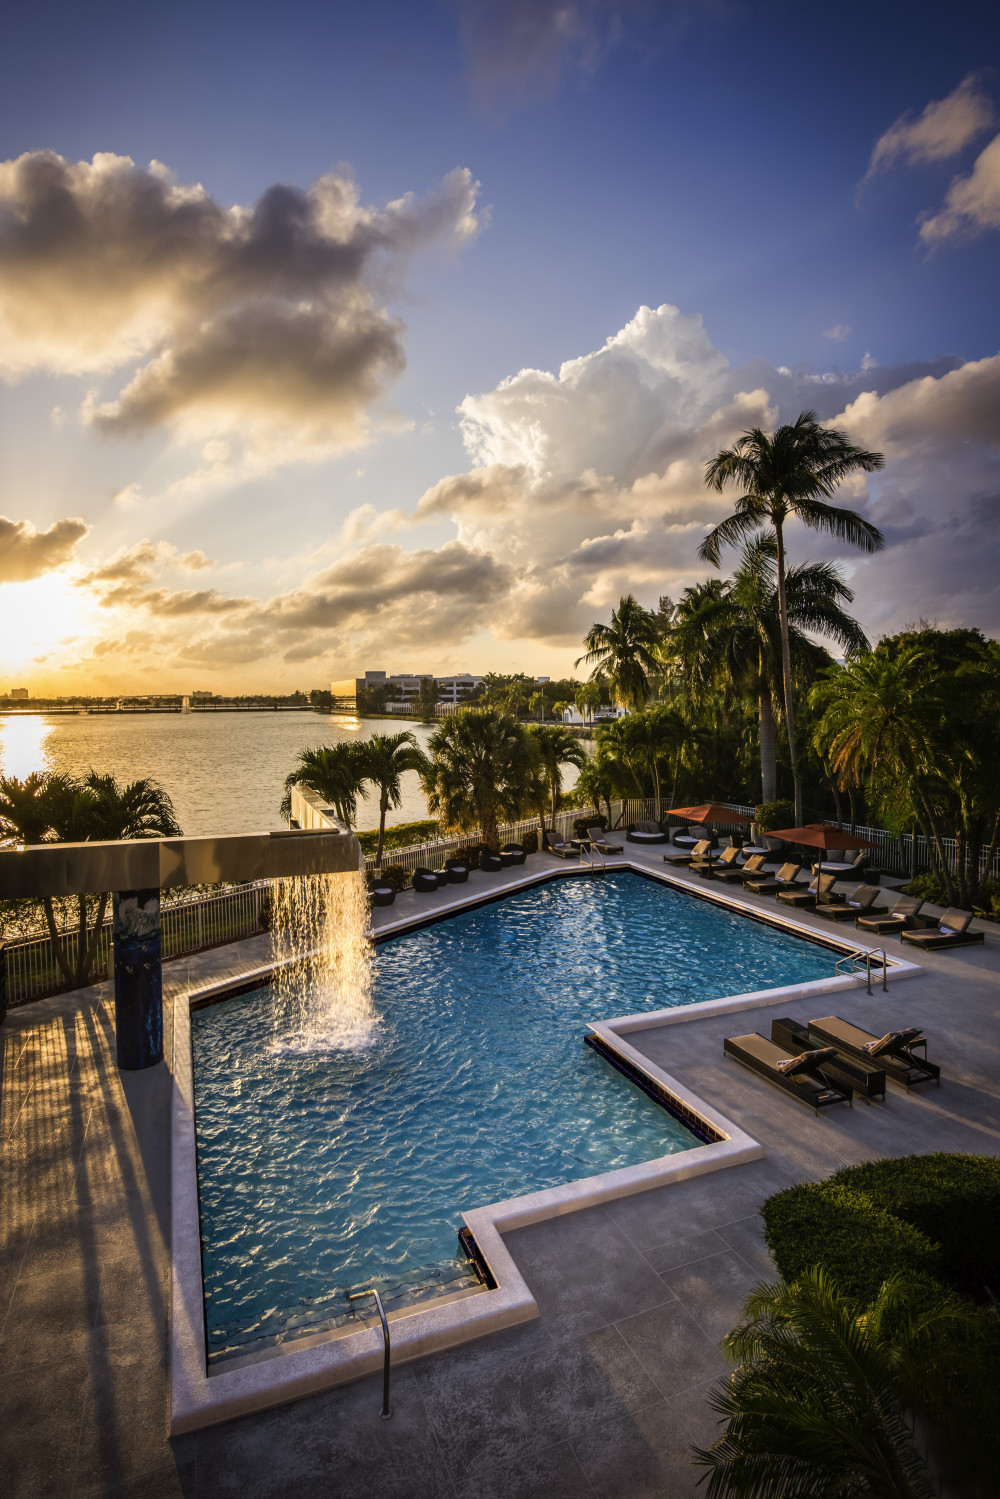 Notre piscine étincelante offre une vue imprenable sur le Blue Lagoon Miami et les toits de la ville